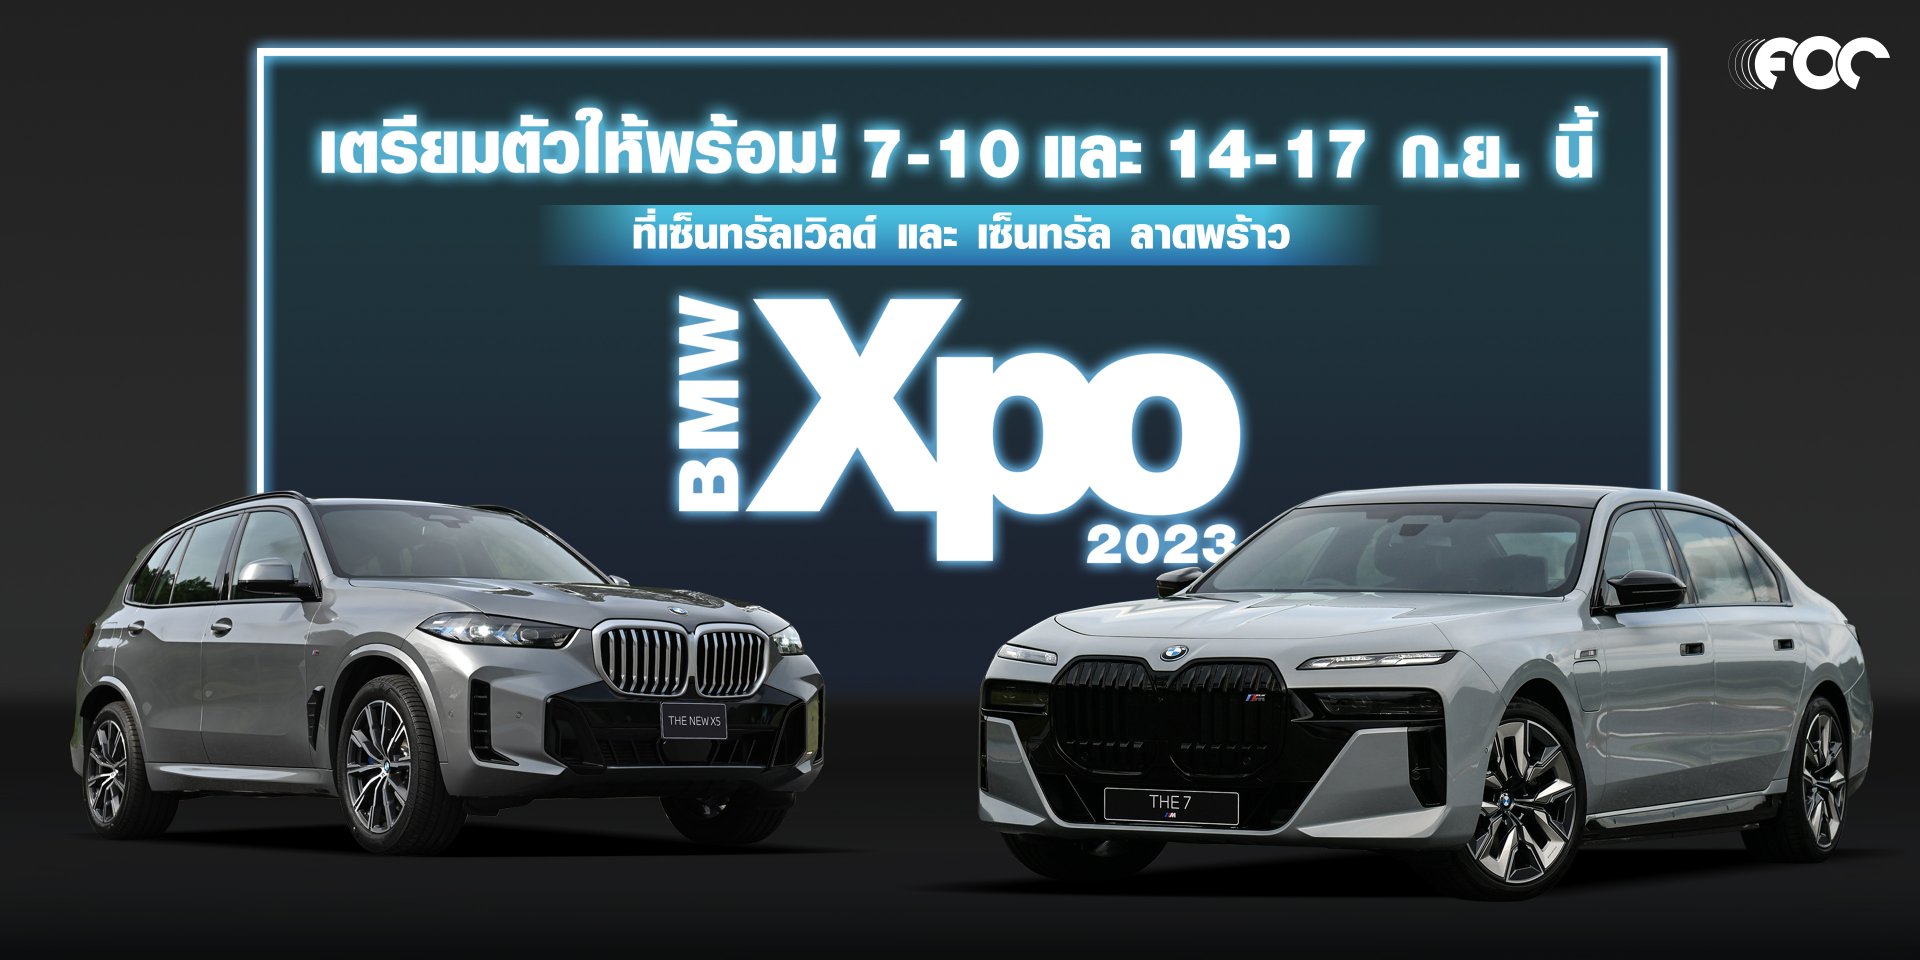 สัมผัสความล้ำสมัย! งานมหกรรมประจำปีสำหรับคนรักบีเอ็มดับเบิลยูกับ BMW Xpo 2023 